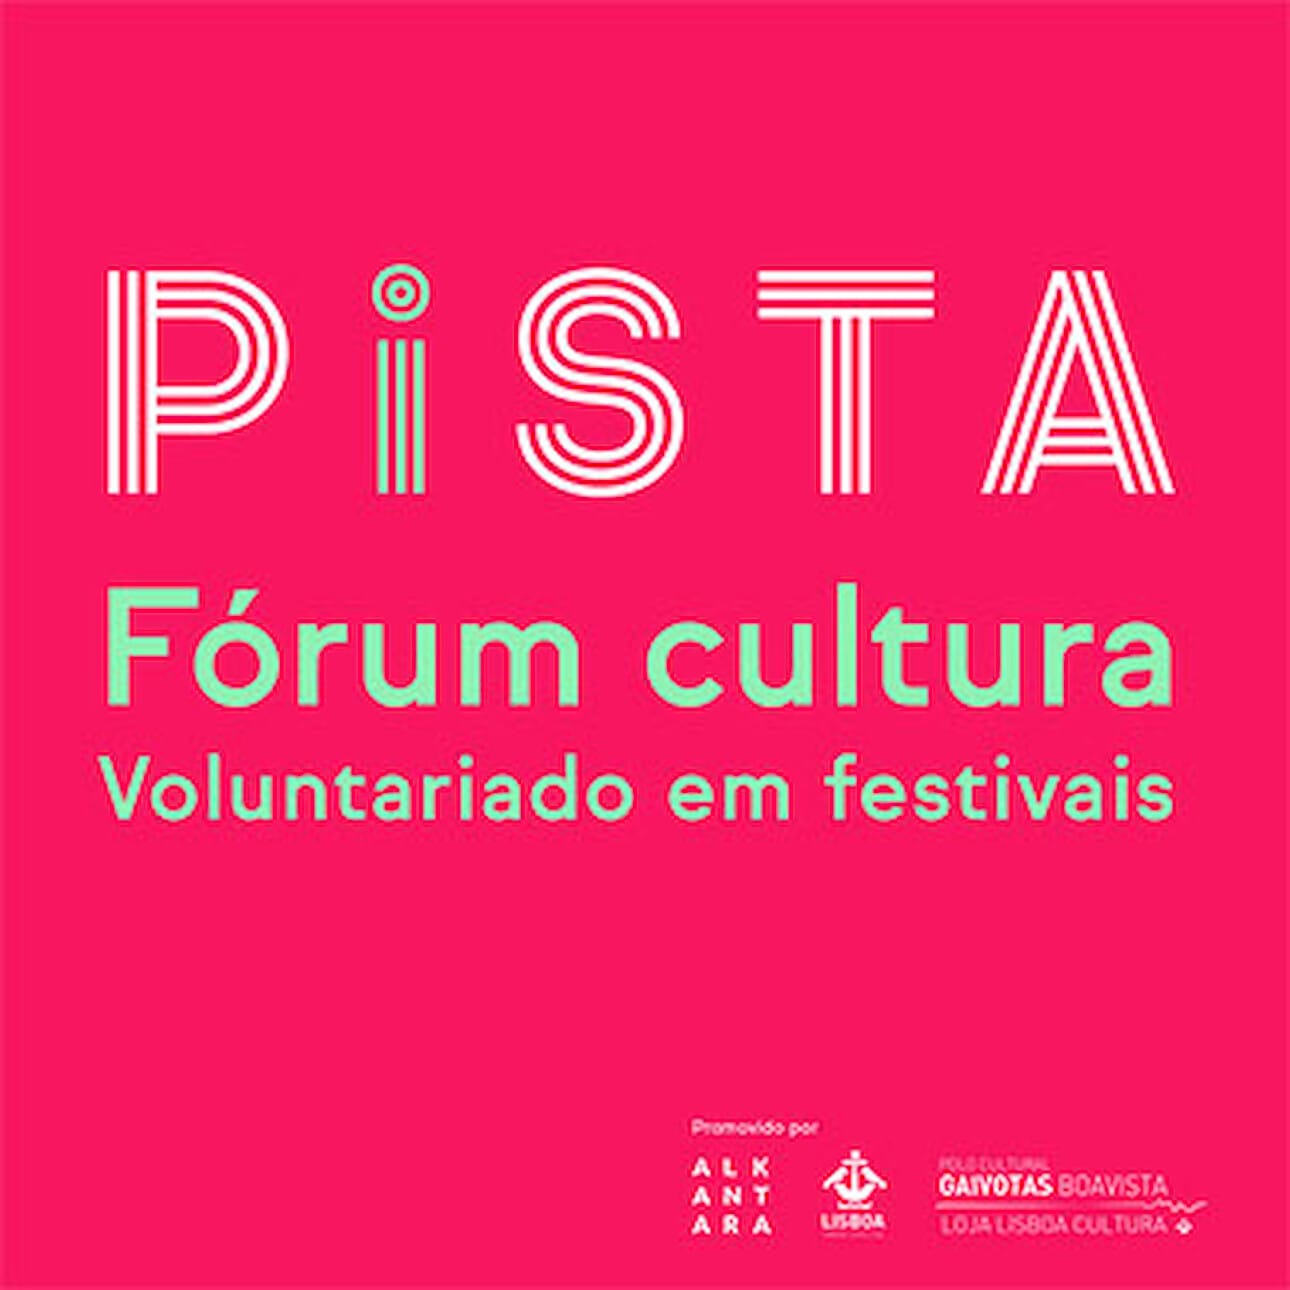 ALKANARA - Fórum Cultura: Voluntariado em festivais - ©